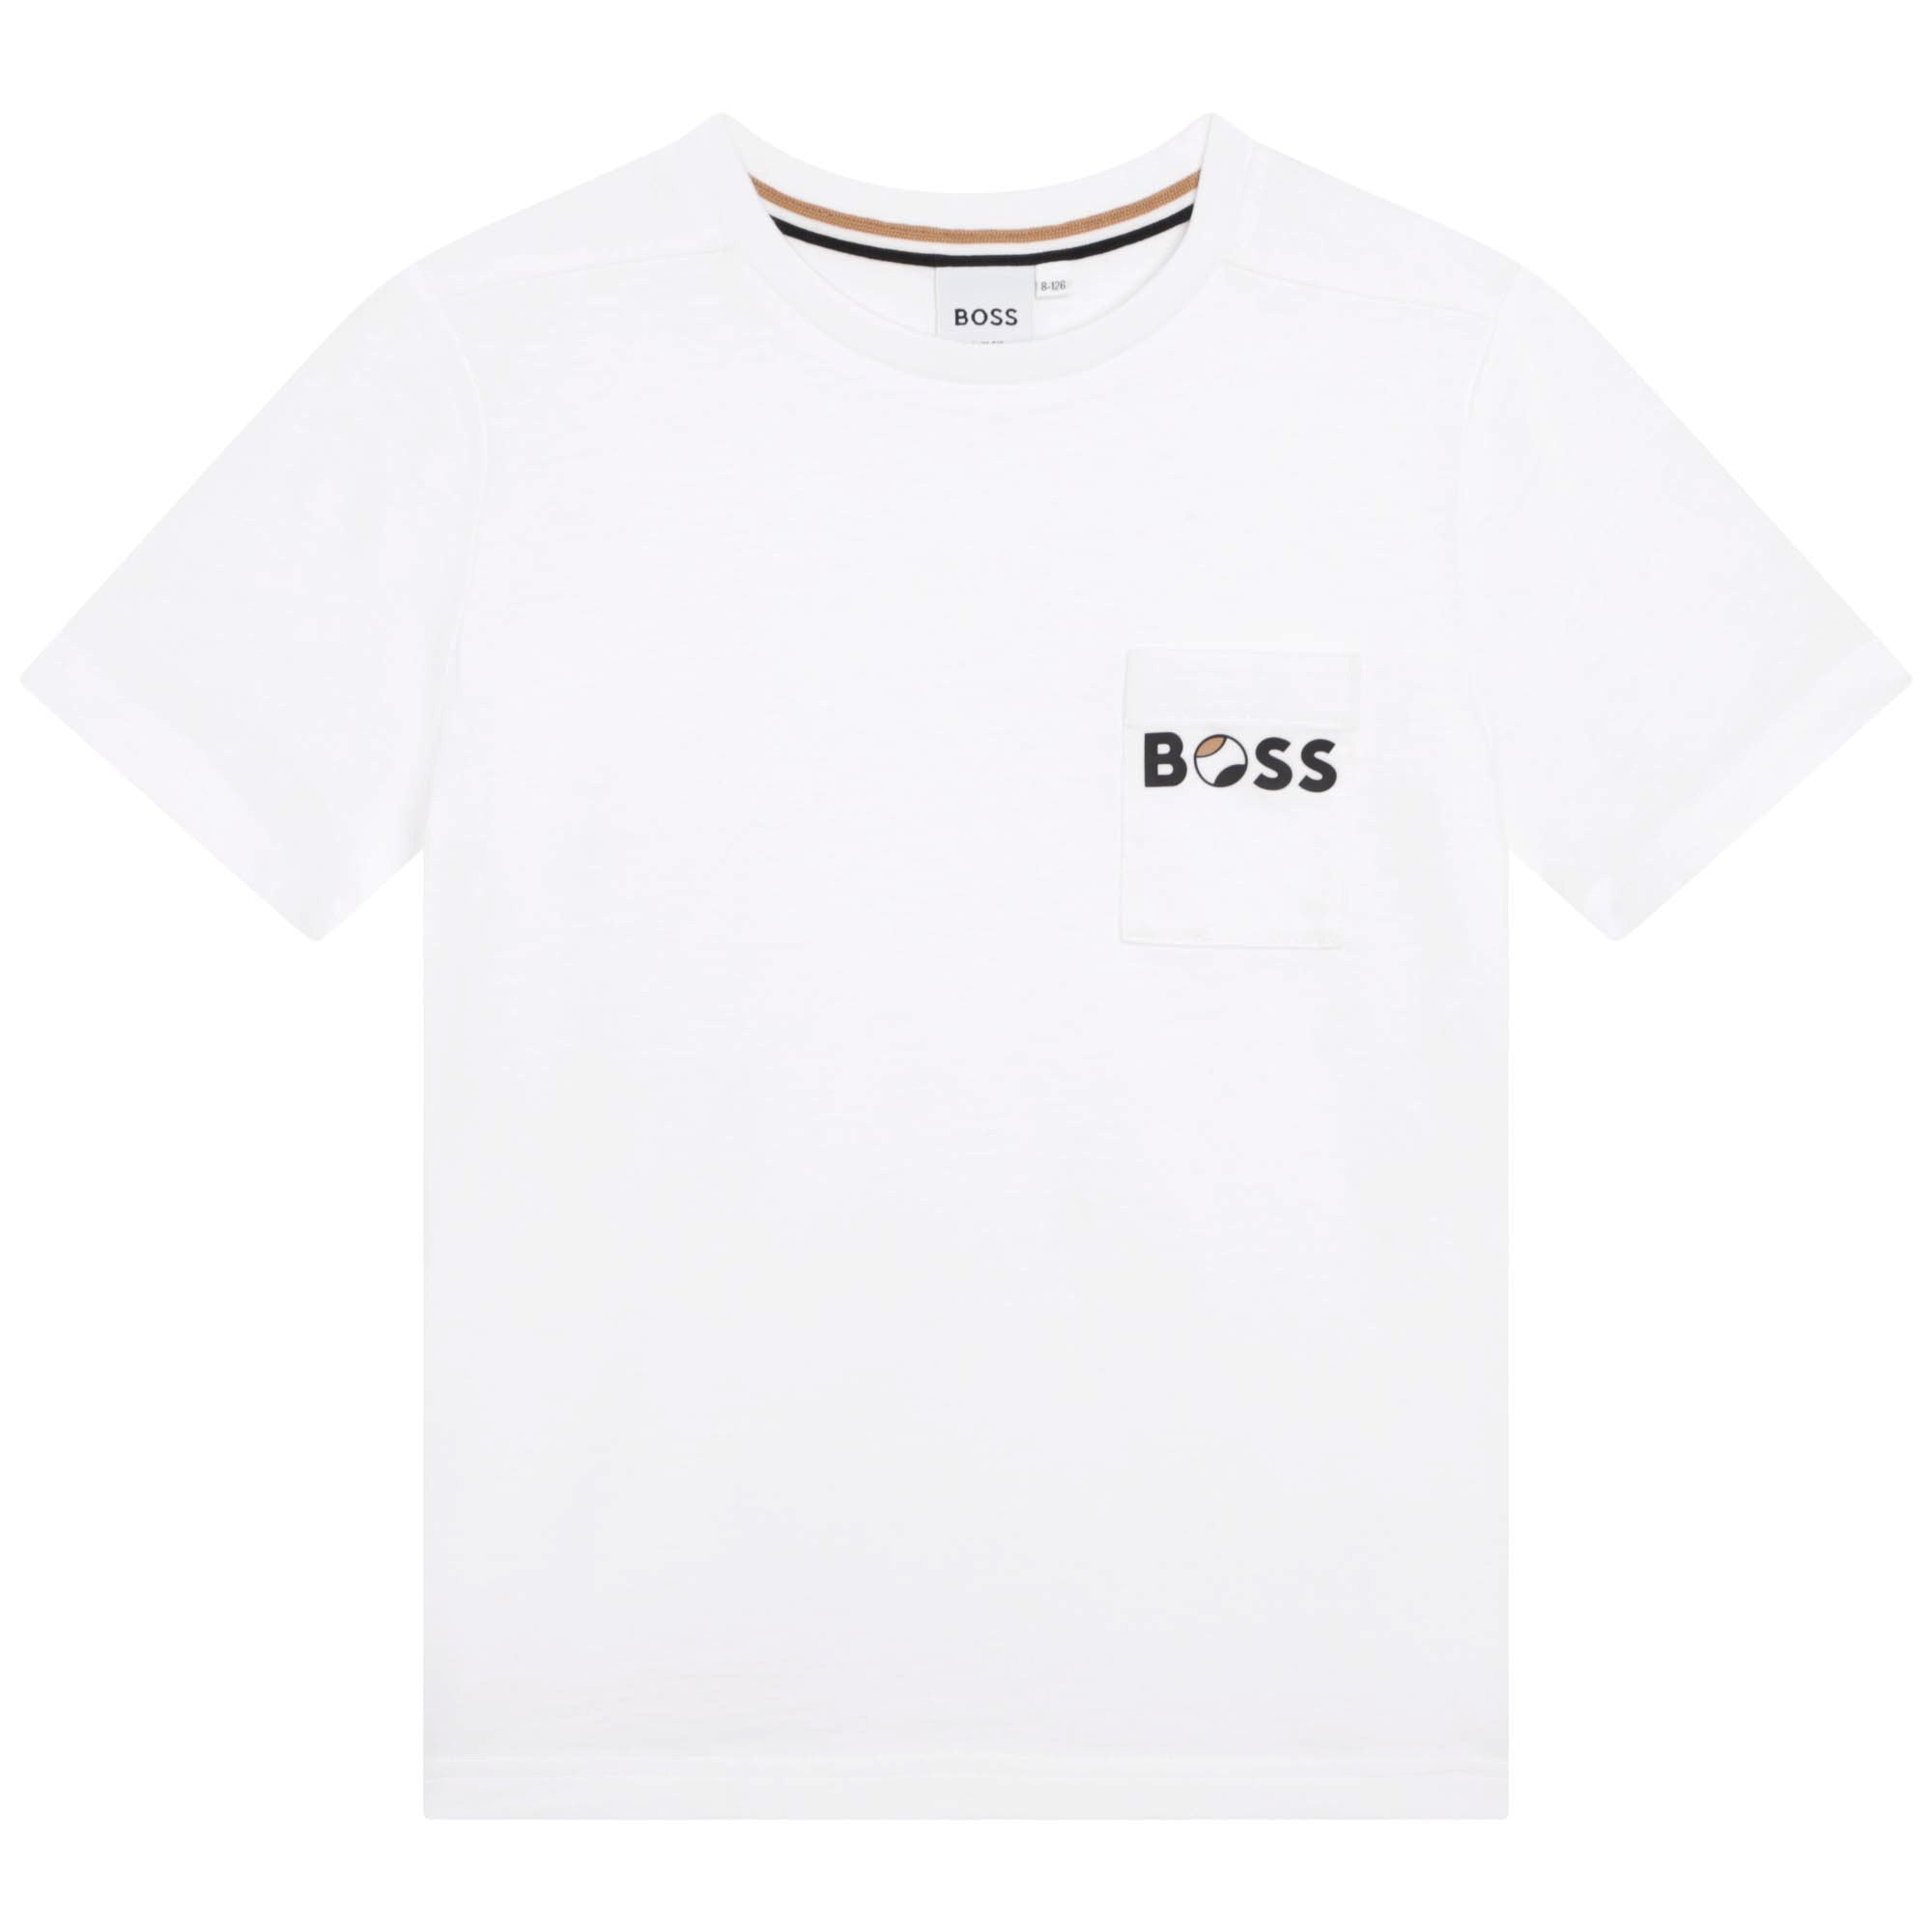 Boss Boys T-shirt